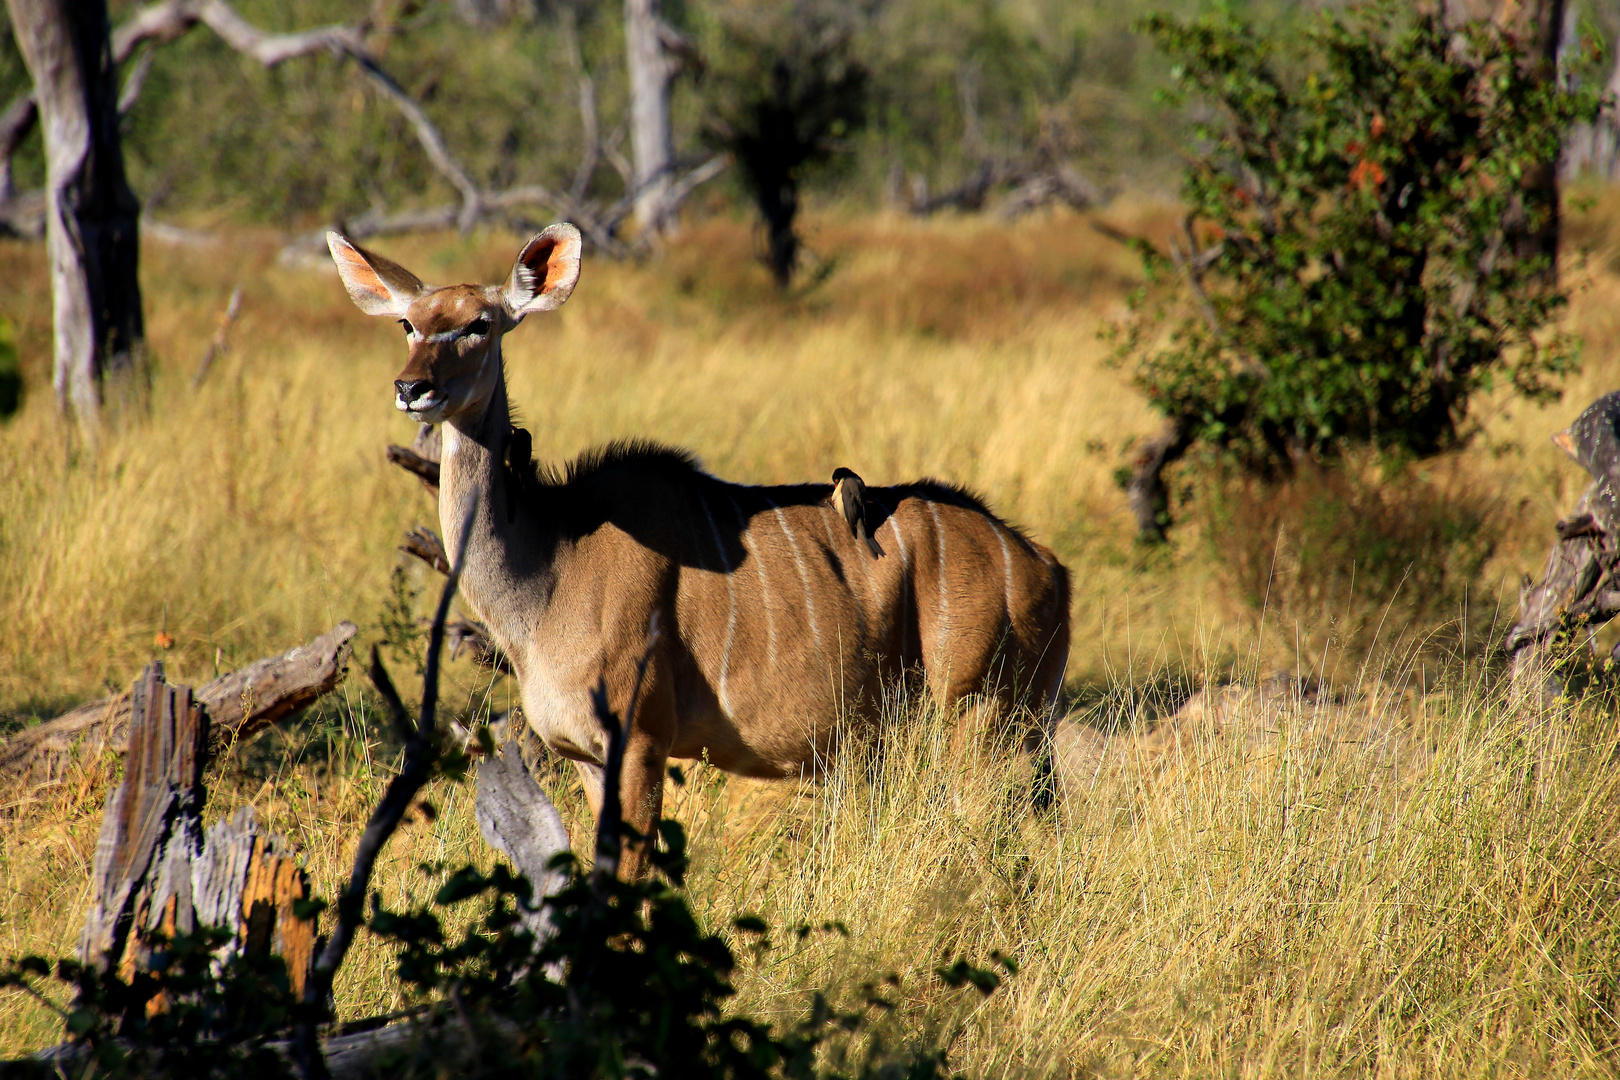 Ein Kudu in Symbiose mit einen Vogel